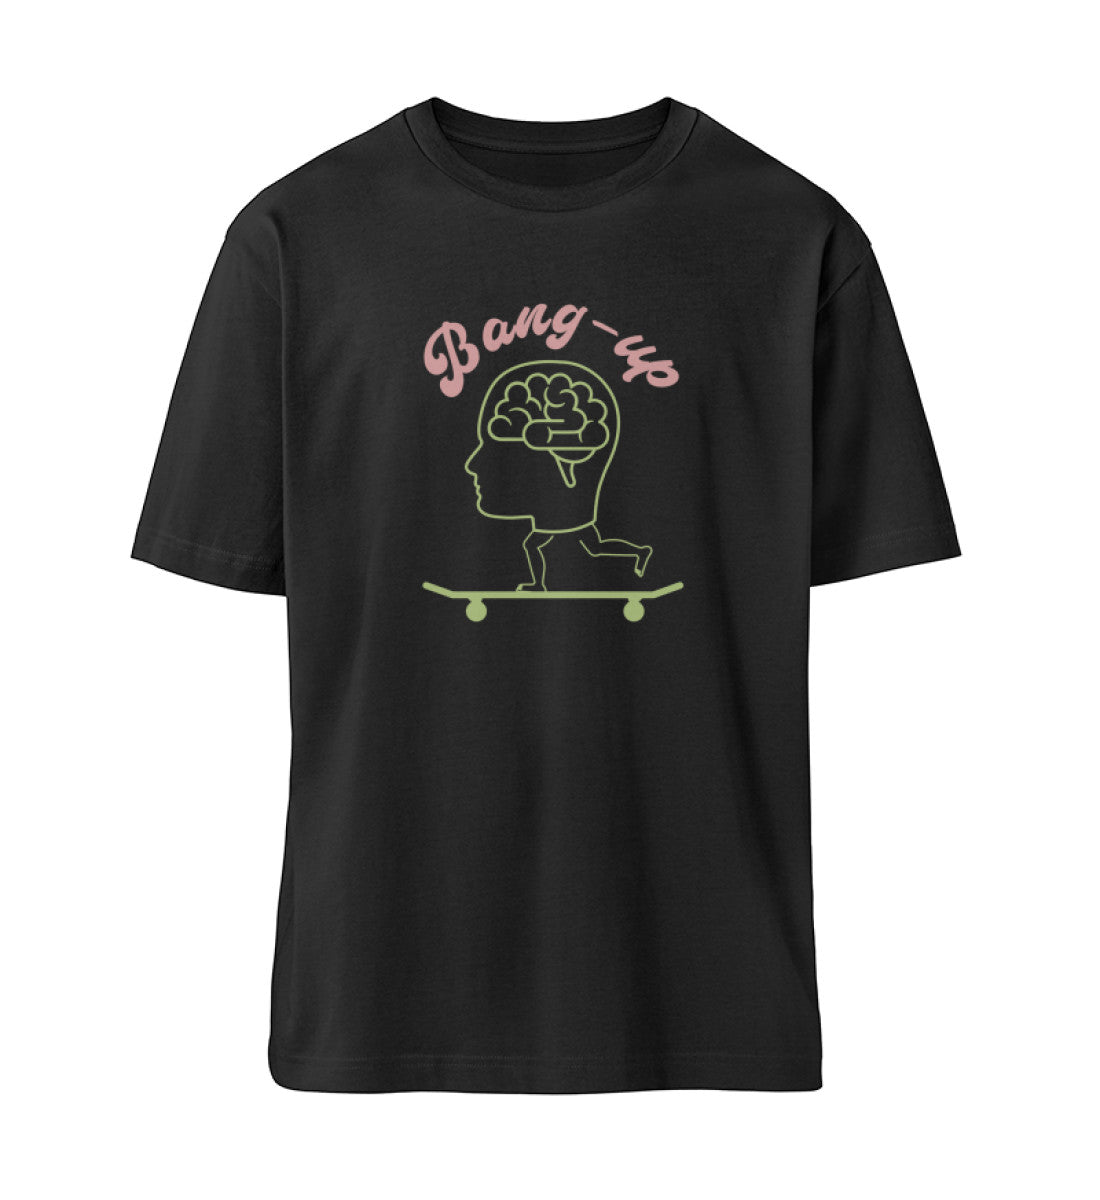 Schwarzes T-Shirt Unisex für Damen und Herren im Relaxed Fit rückseitig bedruckt in schwarz mit Design der Skateboard Bang Up Brain Kollektion und dem Logo Schriftzug von Roger Rockawoo Clothing